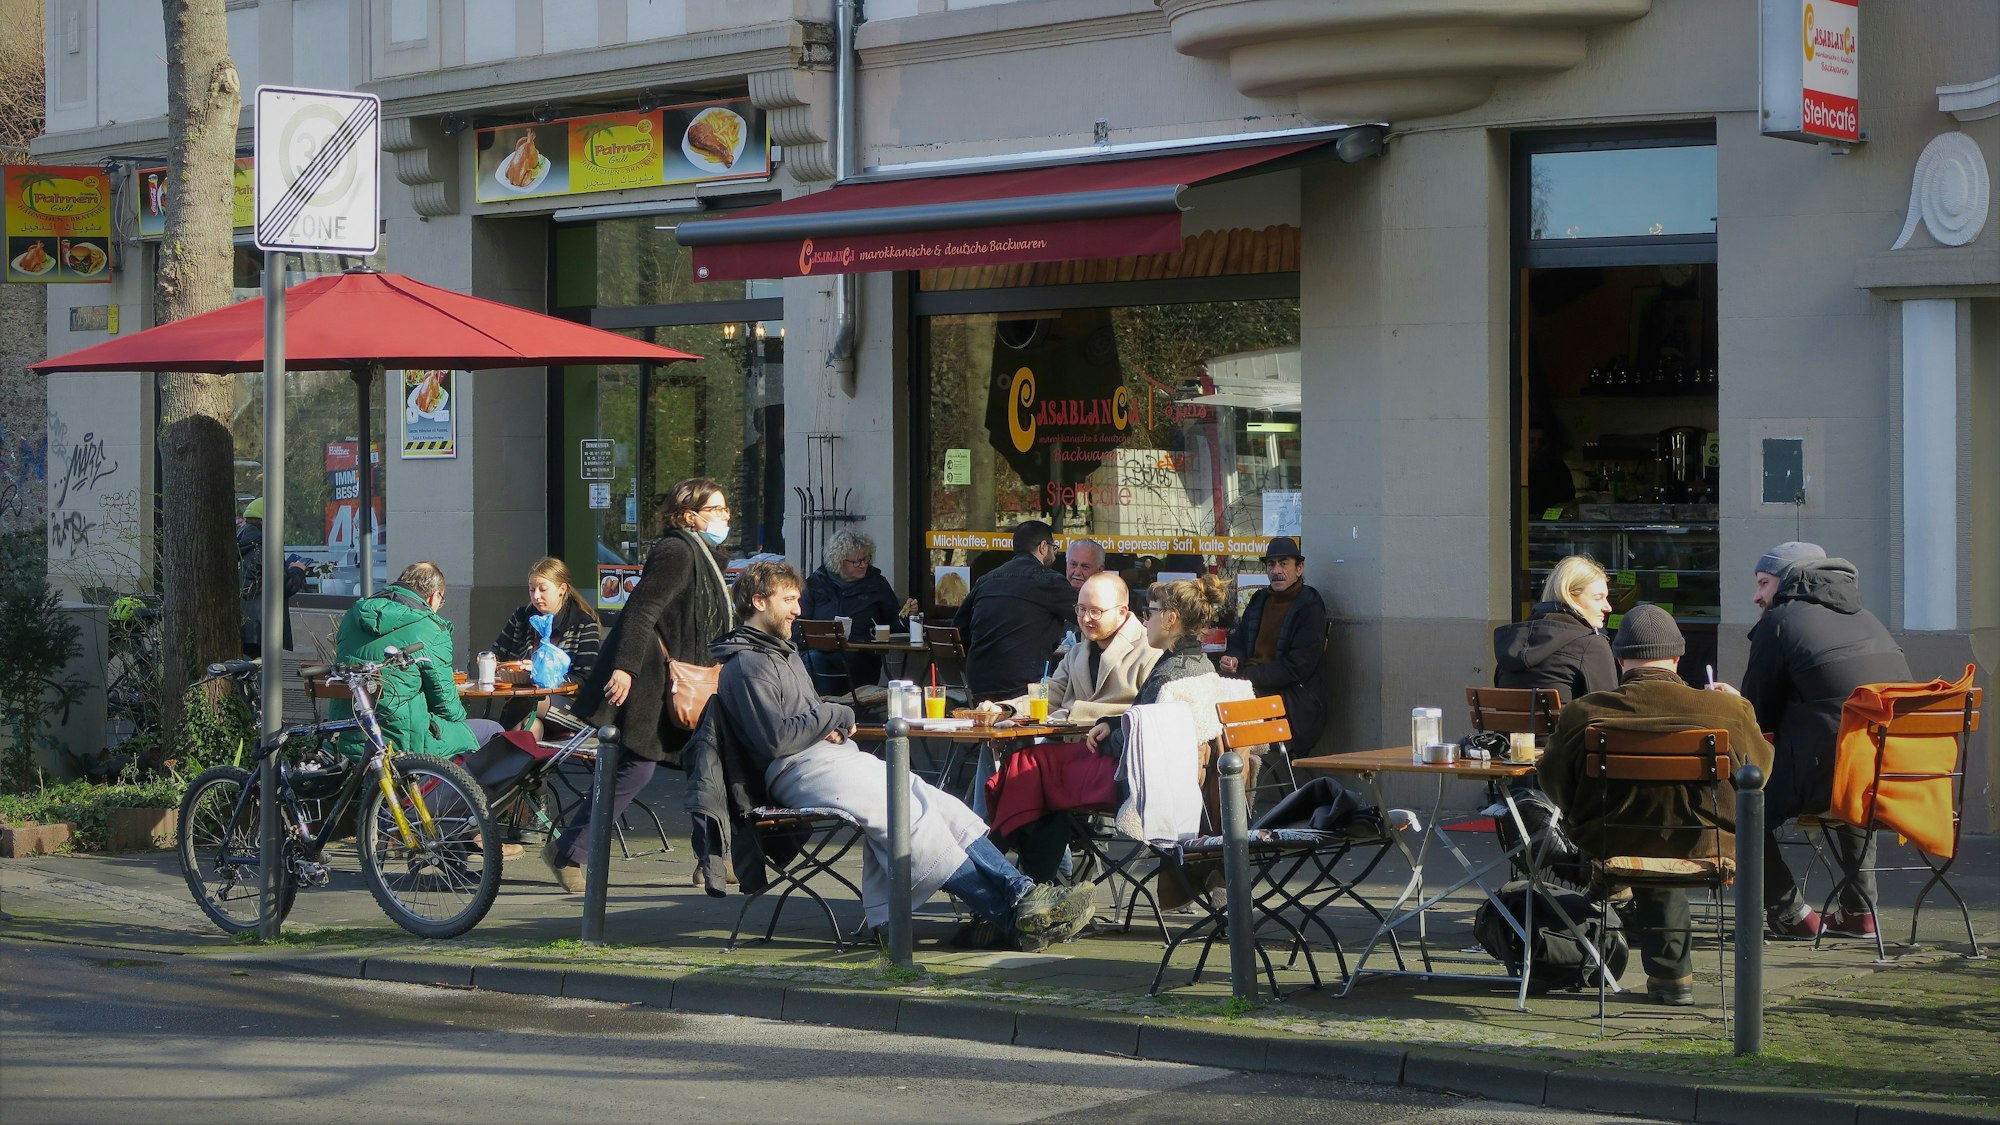 21.2.2022, Humboldt-Gremberg: Das Cafe Casablanca von außen. Foto: Hermans